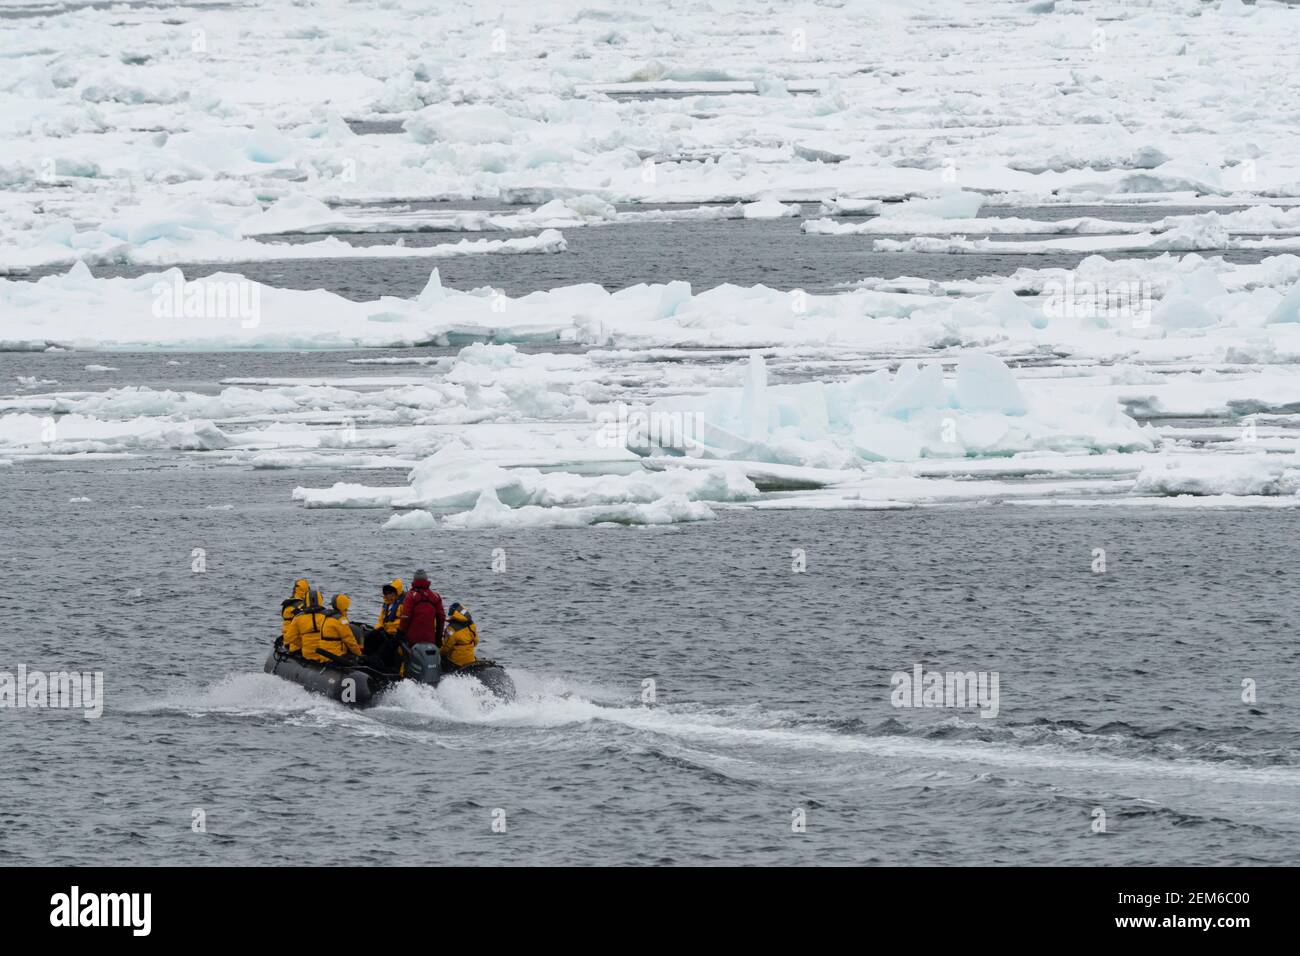 Touristes sur zodiacs explorant la calotte glaciaire polaire, à 81* au nord de Spitsbergen. Banque D'Images